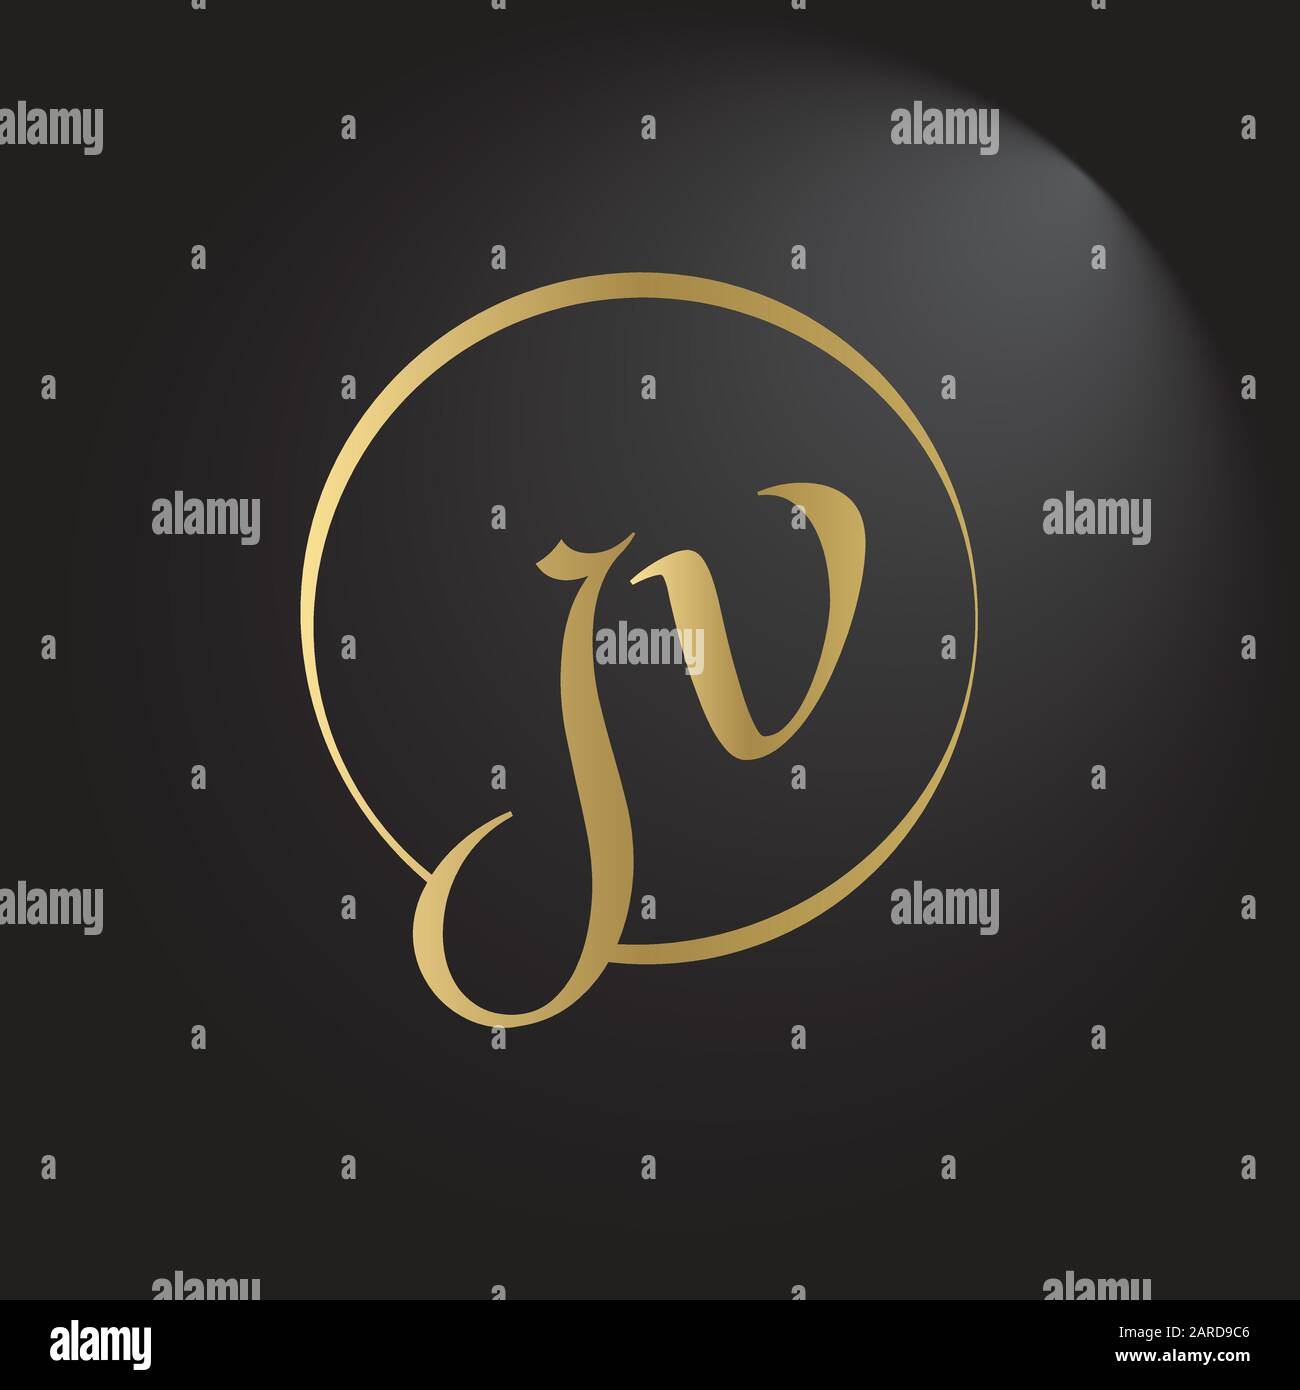 letter JV Logo Design Vector Template. Initial Linked Letter Design JV Vector Illustration Stock Vector